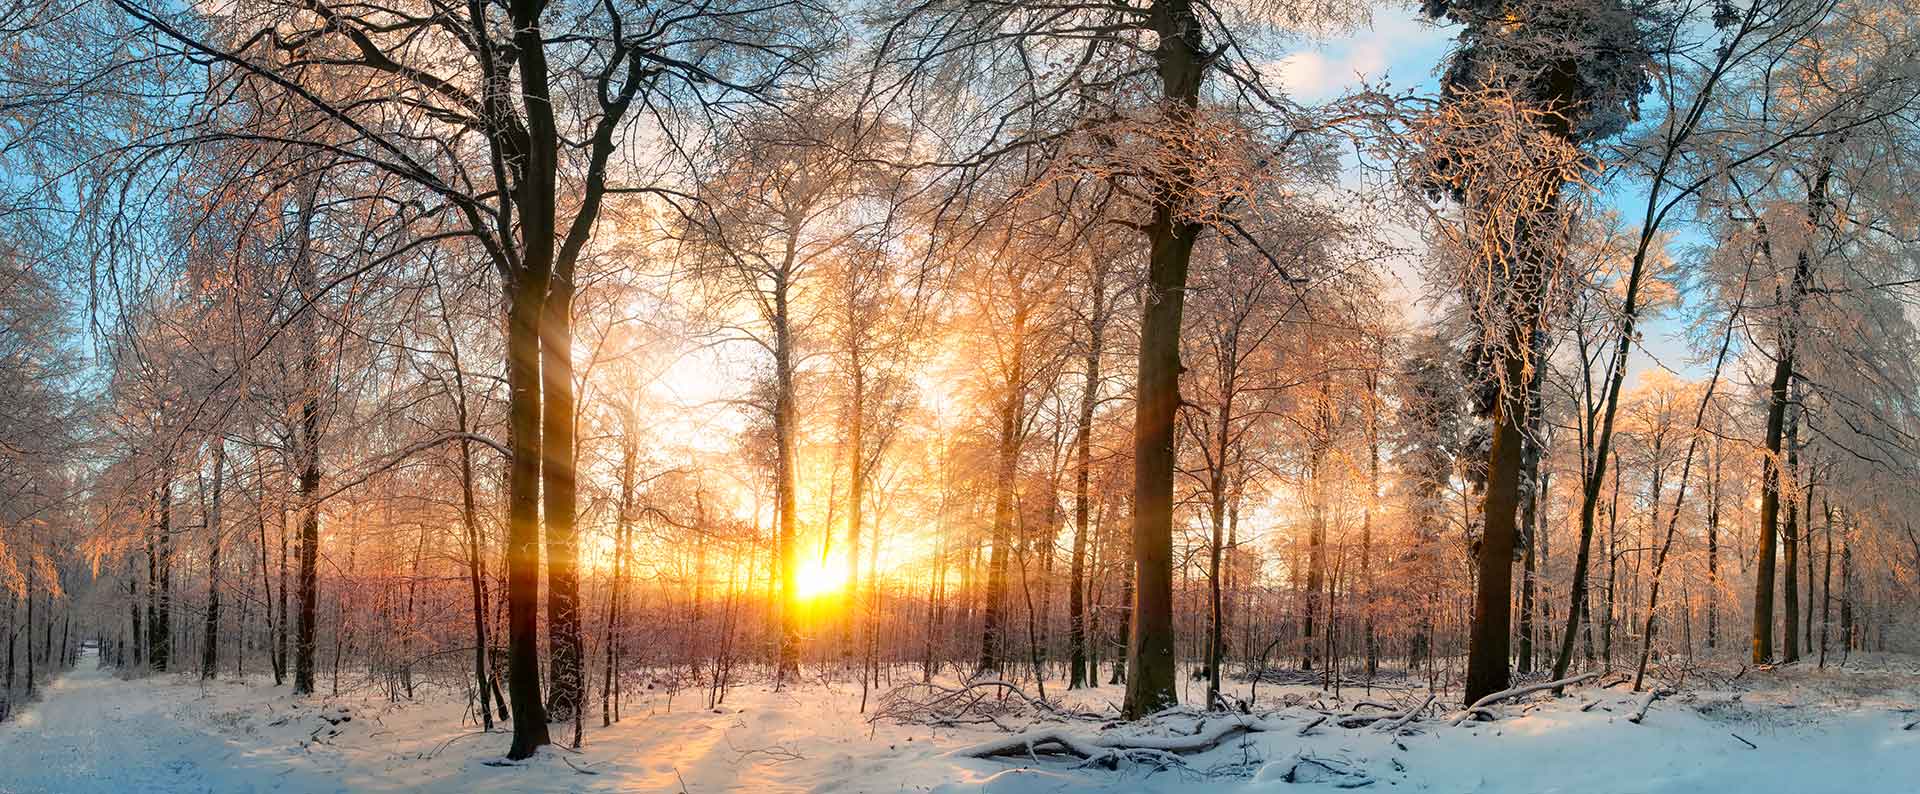 photo à la golden hour dans une zone boisée en hiver